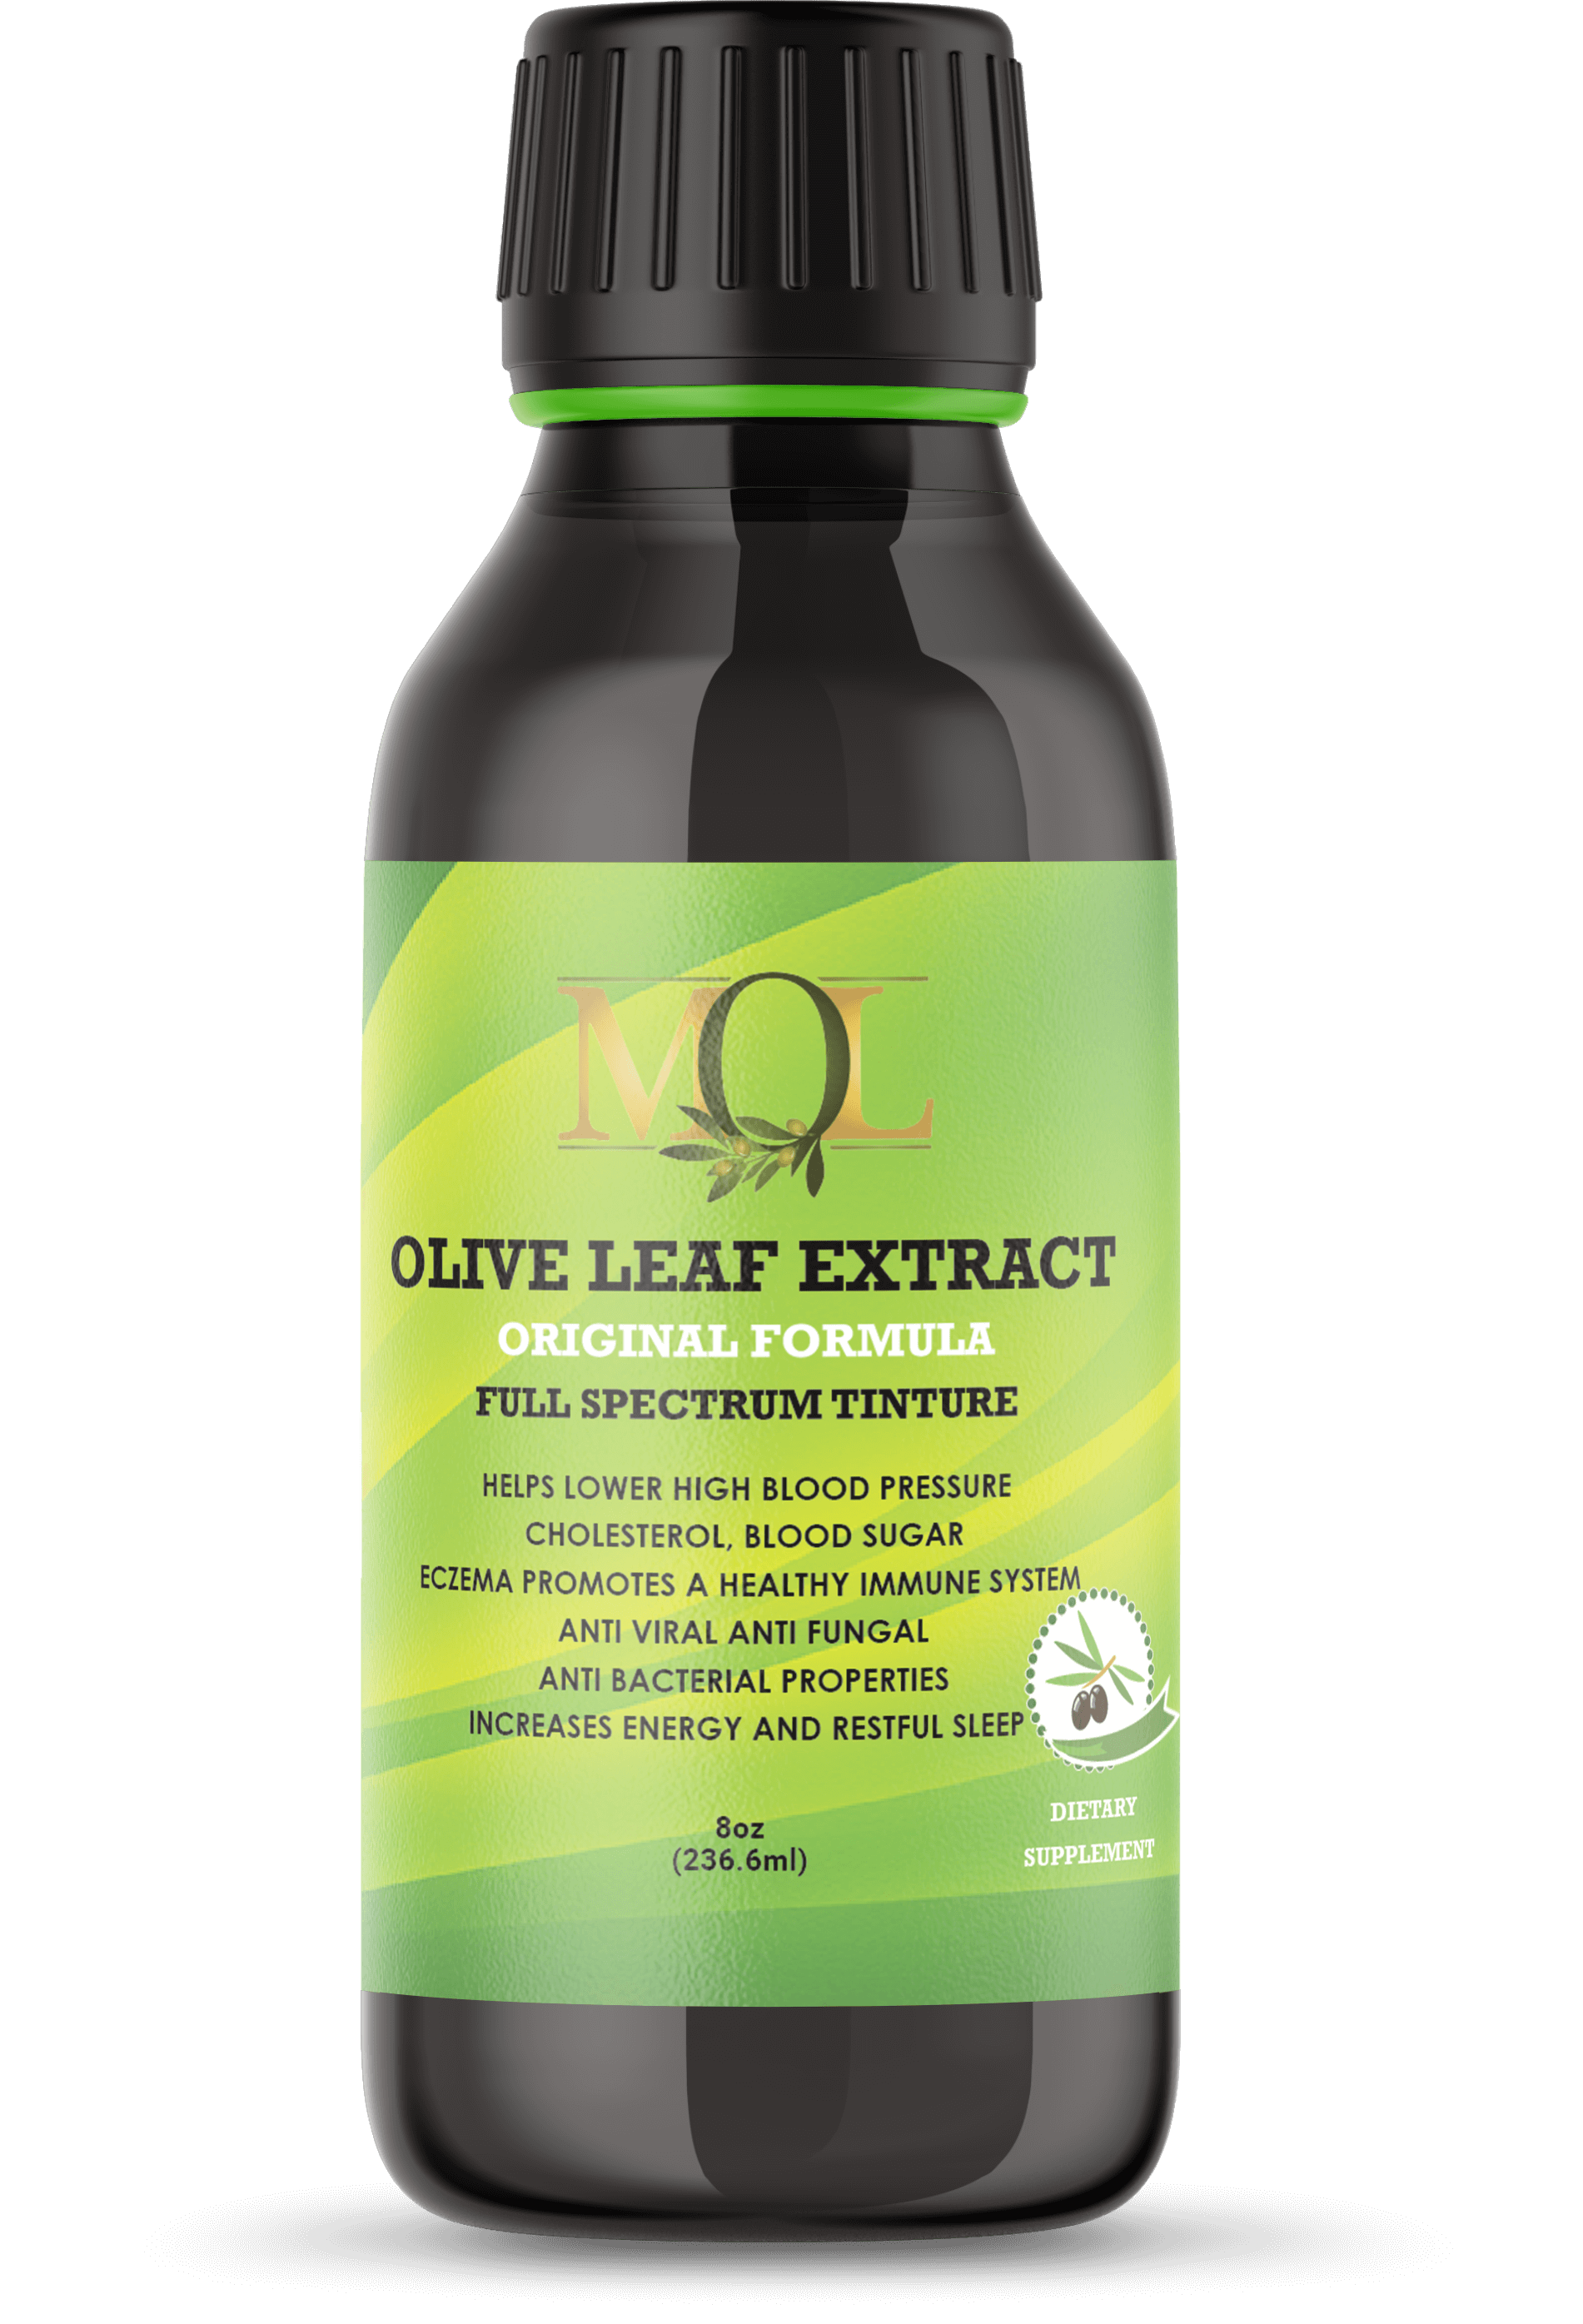 Olive Leaf Extract Original Formula 16oz - My Olive Leaf